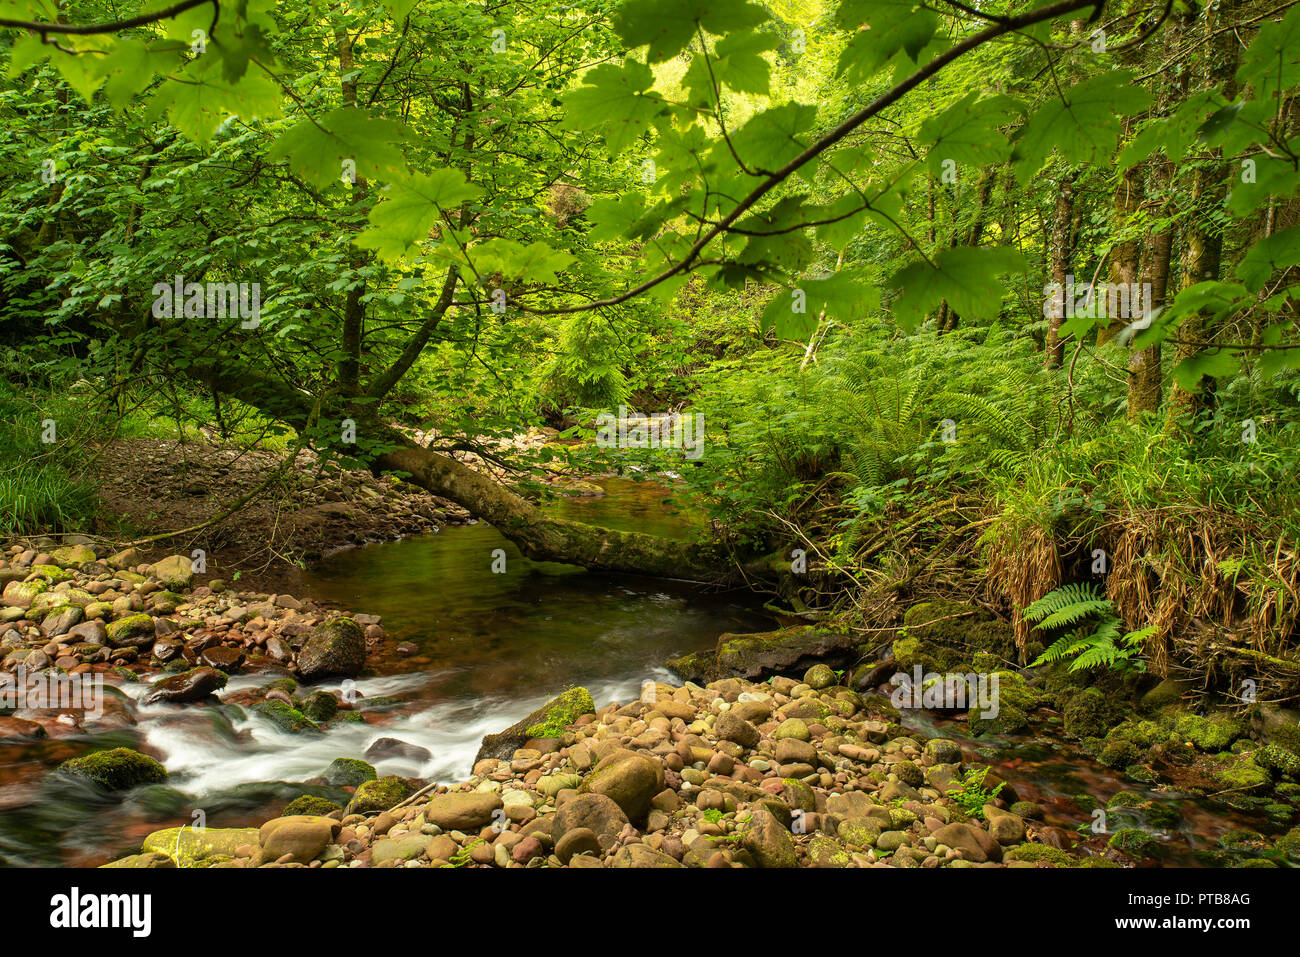 Sommer Wald Szene, grünes Laub, schiefen Baum, über den Fluss wachsenden, braunem Stein Riverbed ausgesetzt, mit grünen Unterholz. Stockfoto